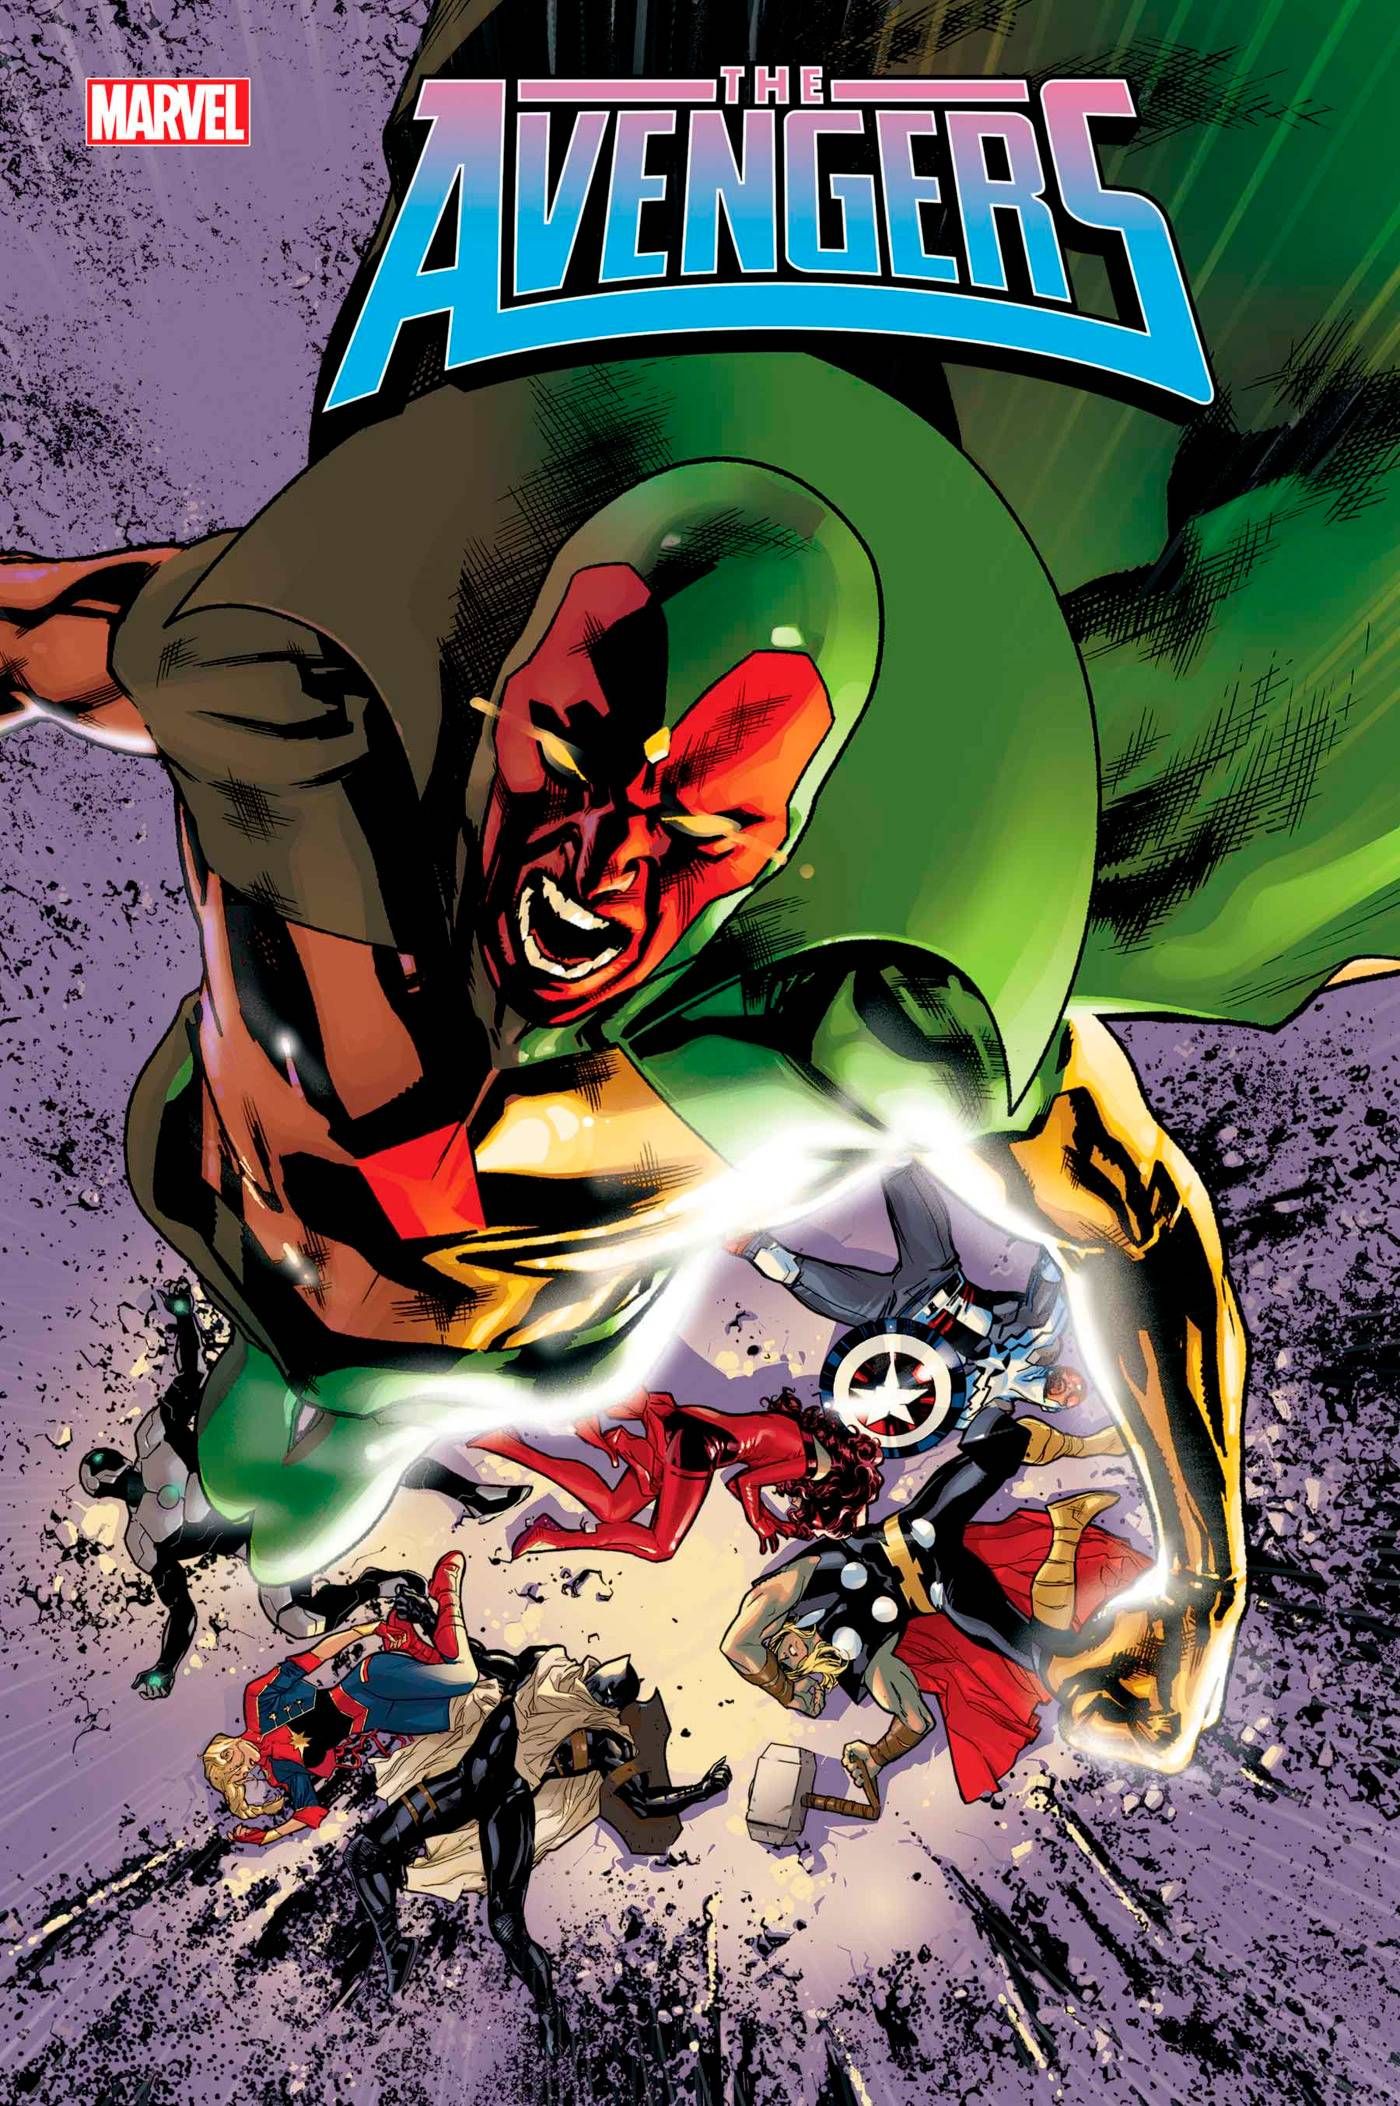 Avengers #7 cover